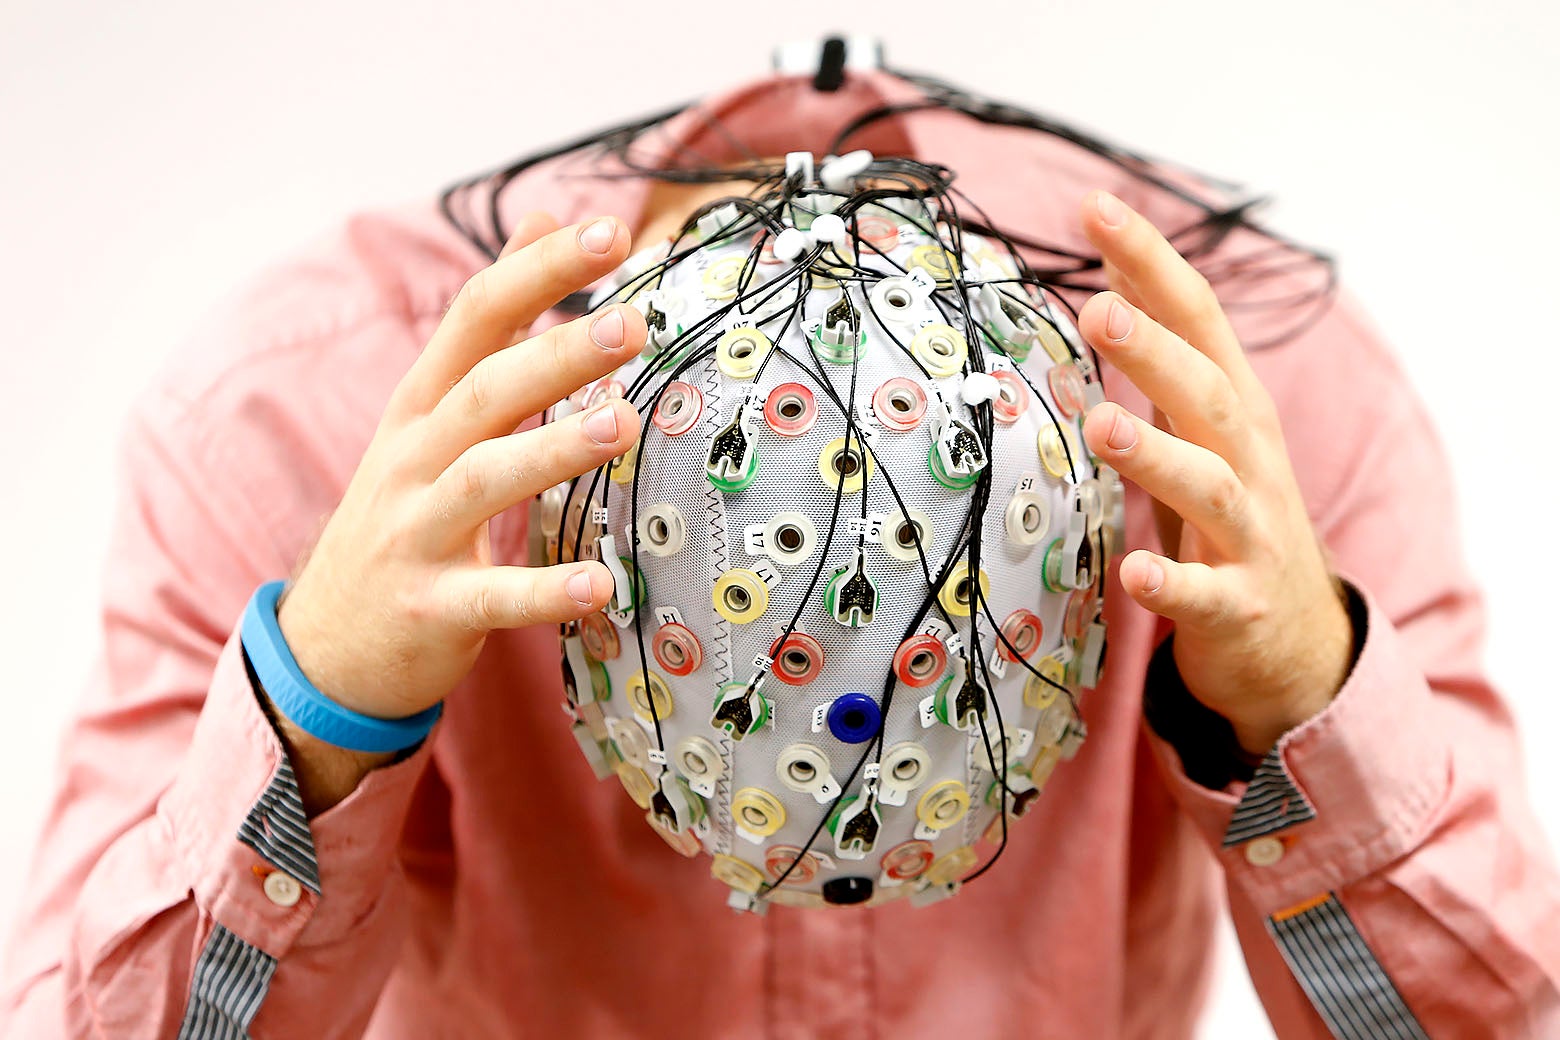 A person wearing an electroencephalography (EEG) cap.